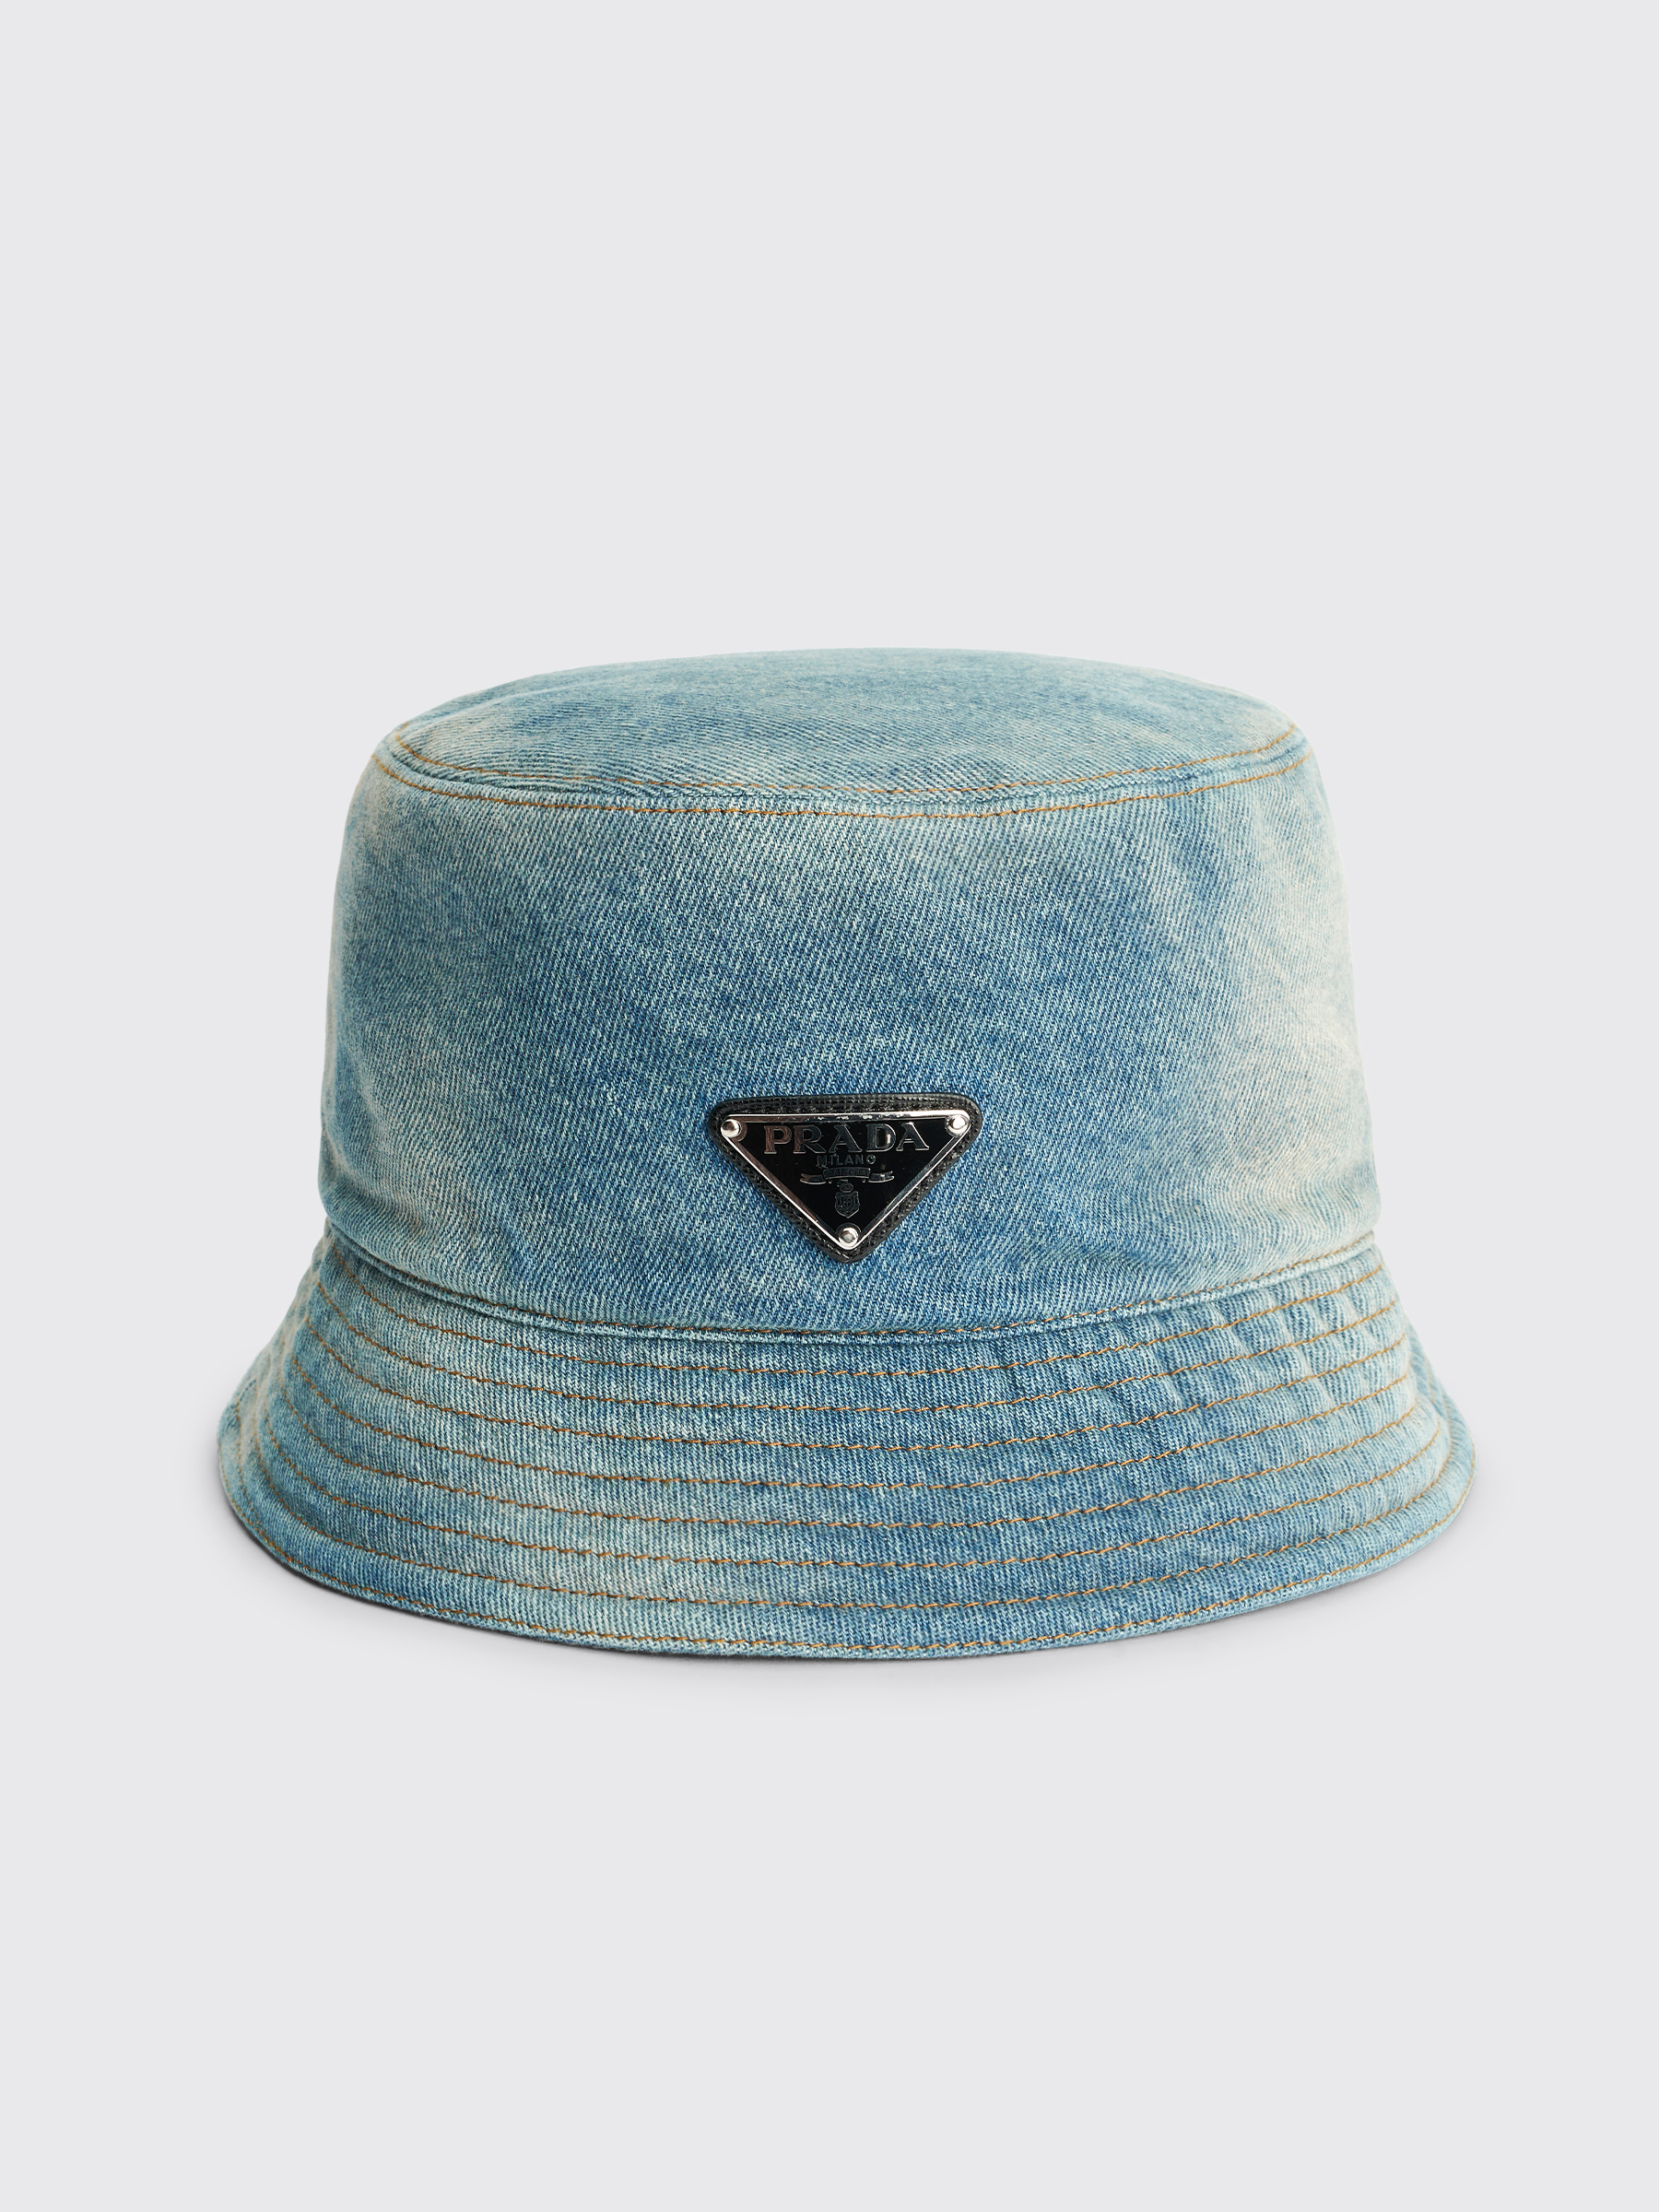 Très Bien - Prada Capelli Denim Bucket Hat Blue